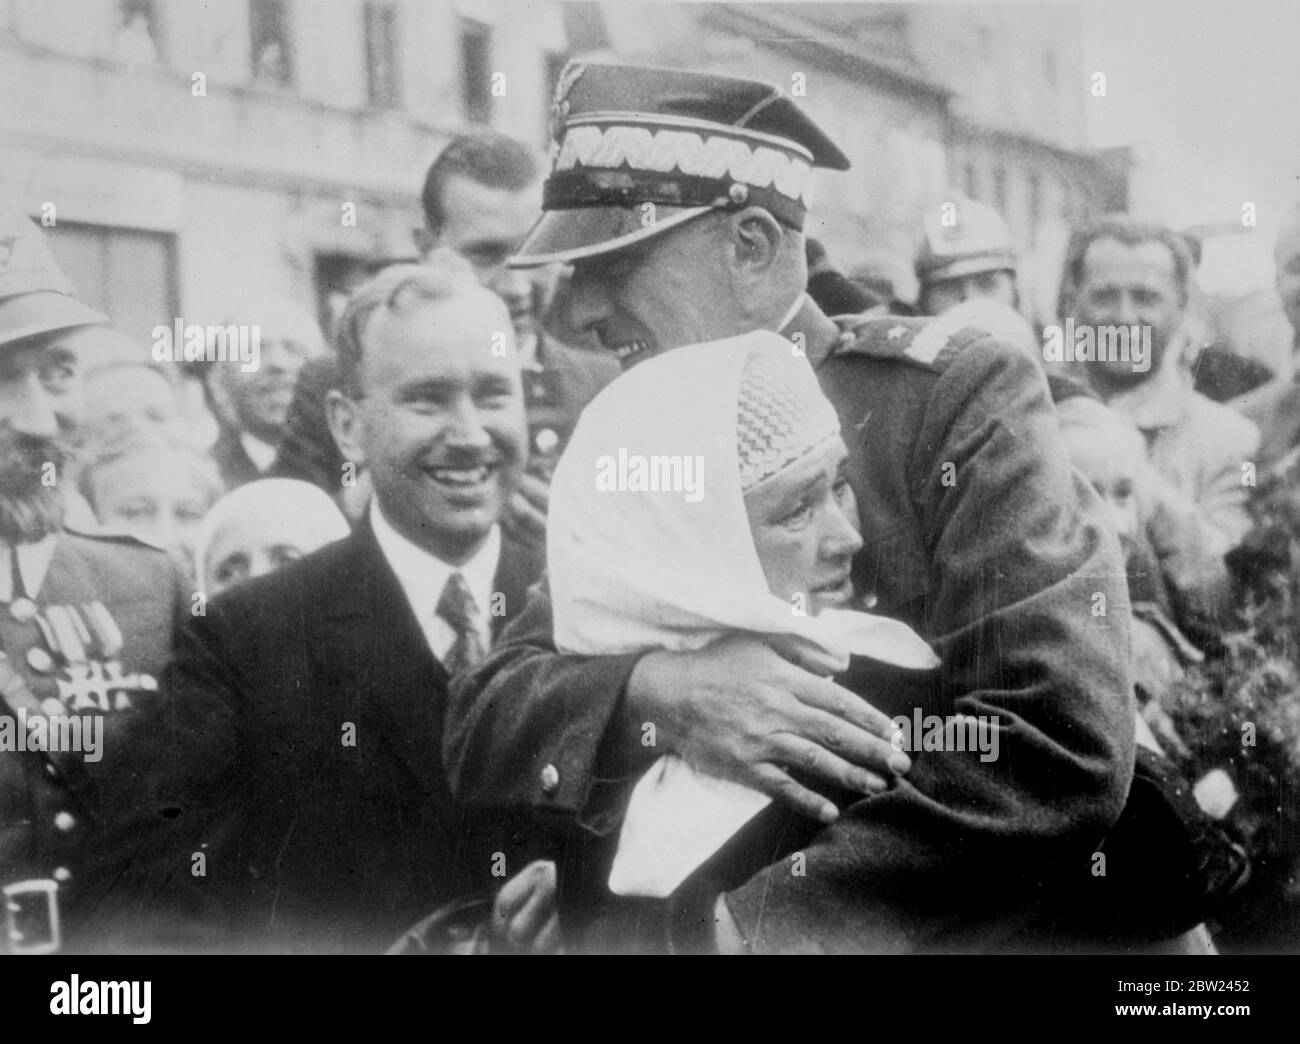 General bortnowski von der polnischen Armee umrundete eine polnische Bäuerin, die ihn mit Freudentränen begrüßte, als die polnischen Streitkräfte Teschen besetzten, das Gebiet, das die Tschechoslowakei Polen unter Einhaltung eines Ultimatums überließ. Oktober 1938 Stockfoto